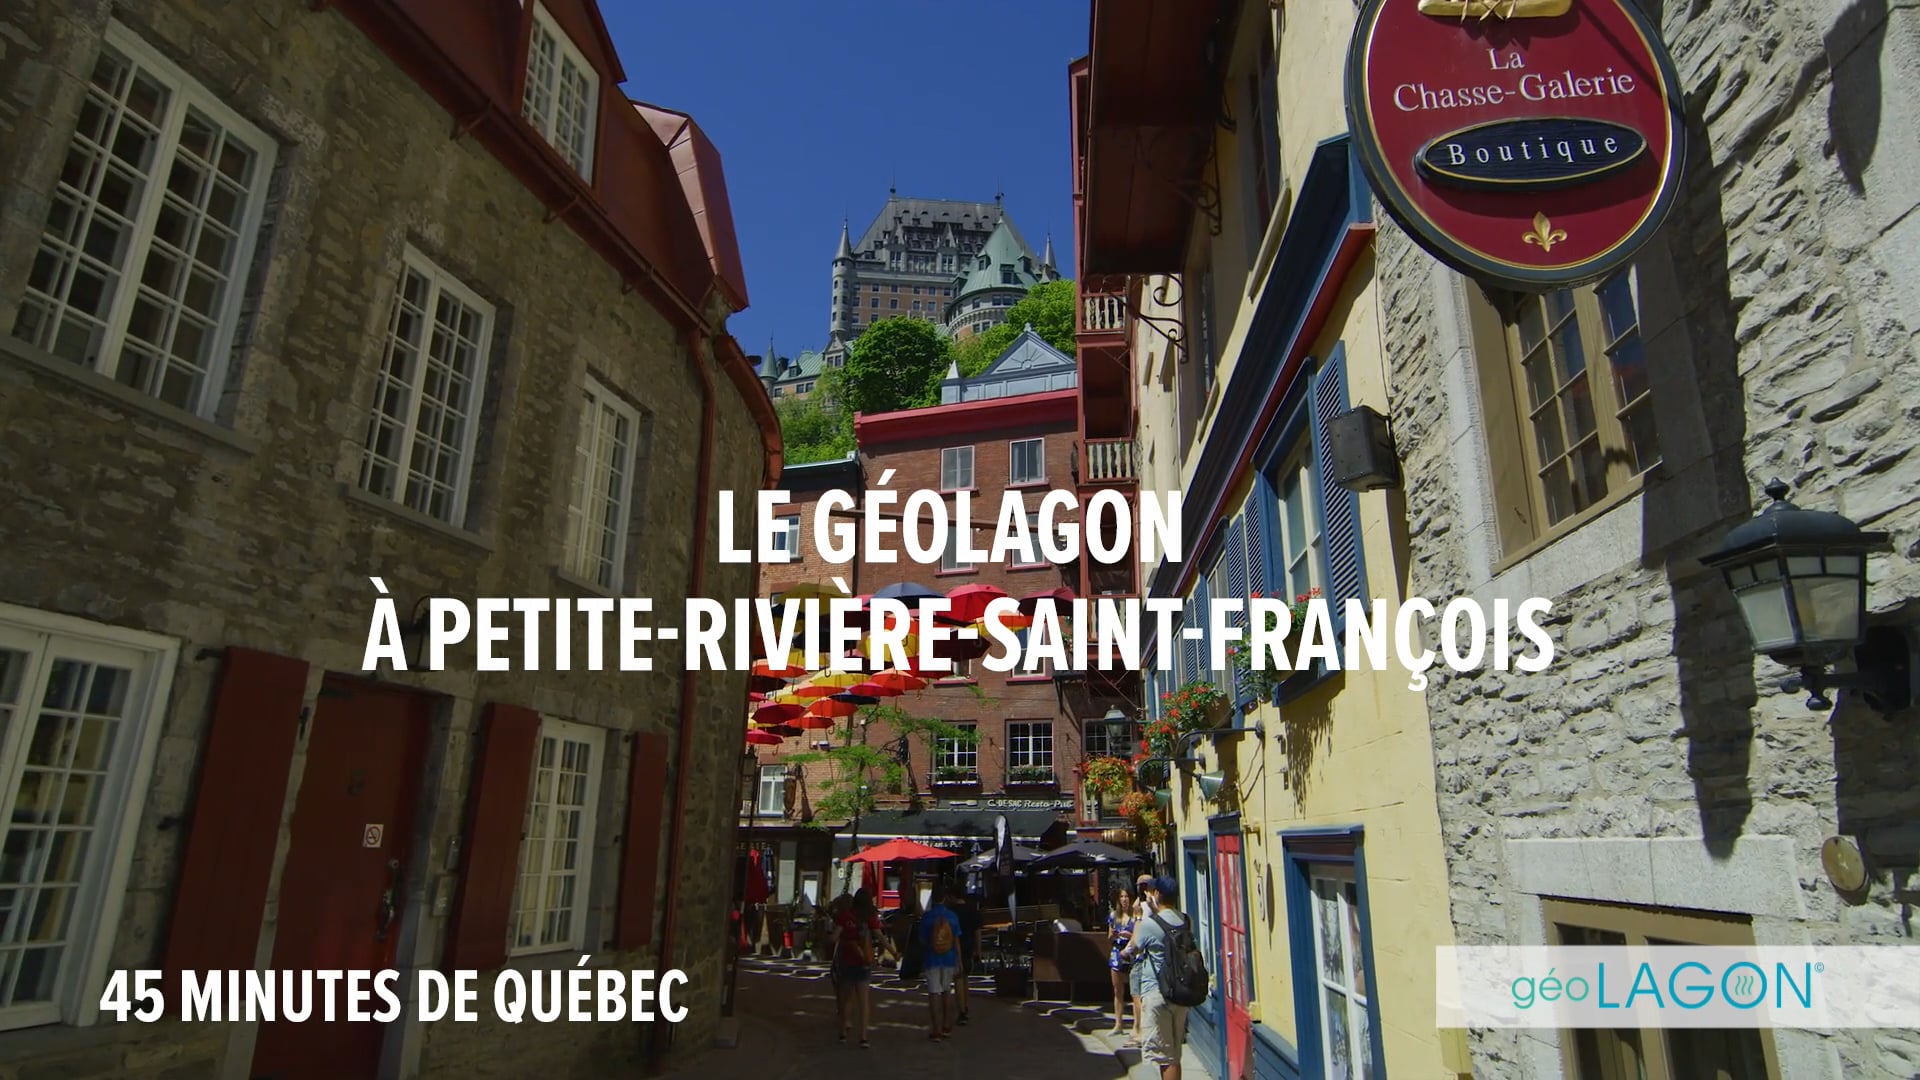 Soleils Village et géoLAGON à Petite-Rivière-Saint-François; le conseil municipal accueille les projets avec enthousiasme !